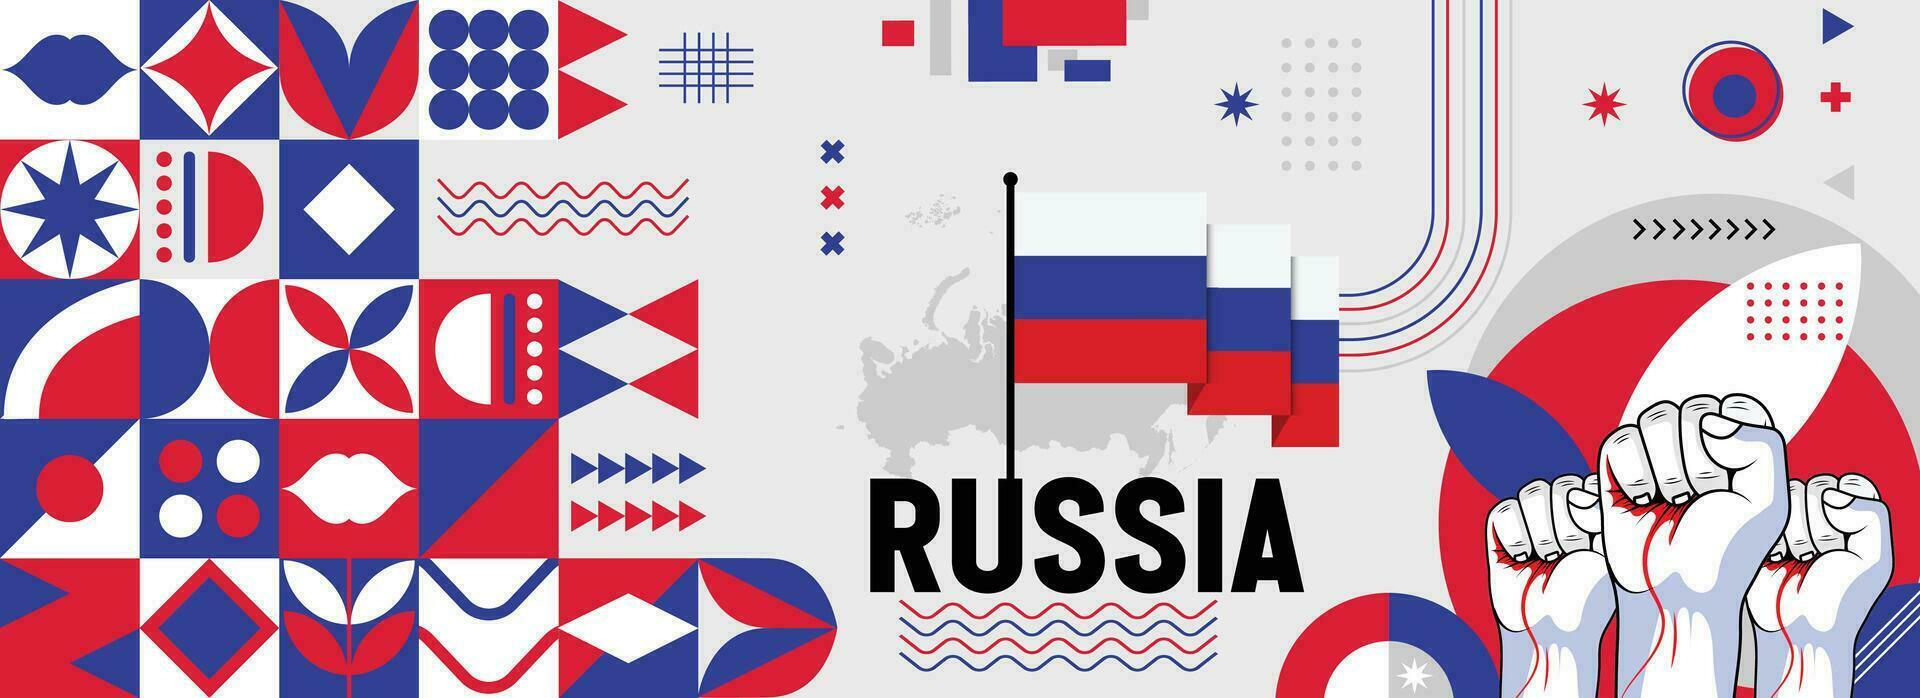 Rússia nacional ou independência dia bandeira para país celebração. bandeira e mapa do russo com elevado punhos. moderno retro Projeto com typorgaphy abstrato geométrico ícones. vetor ilustração